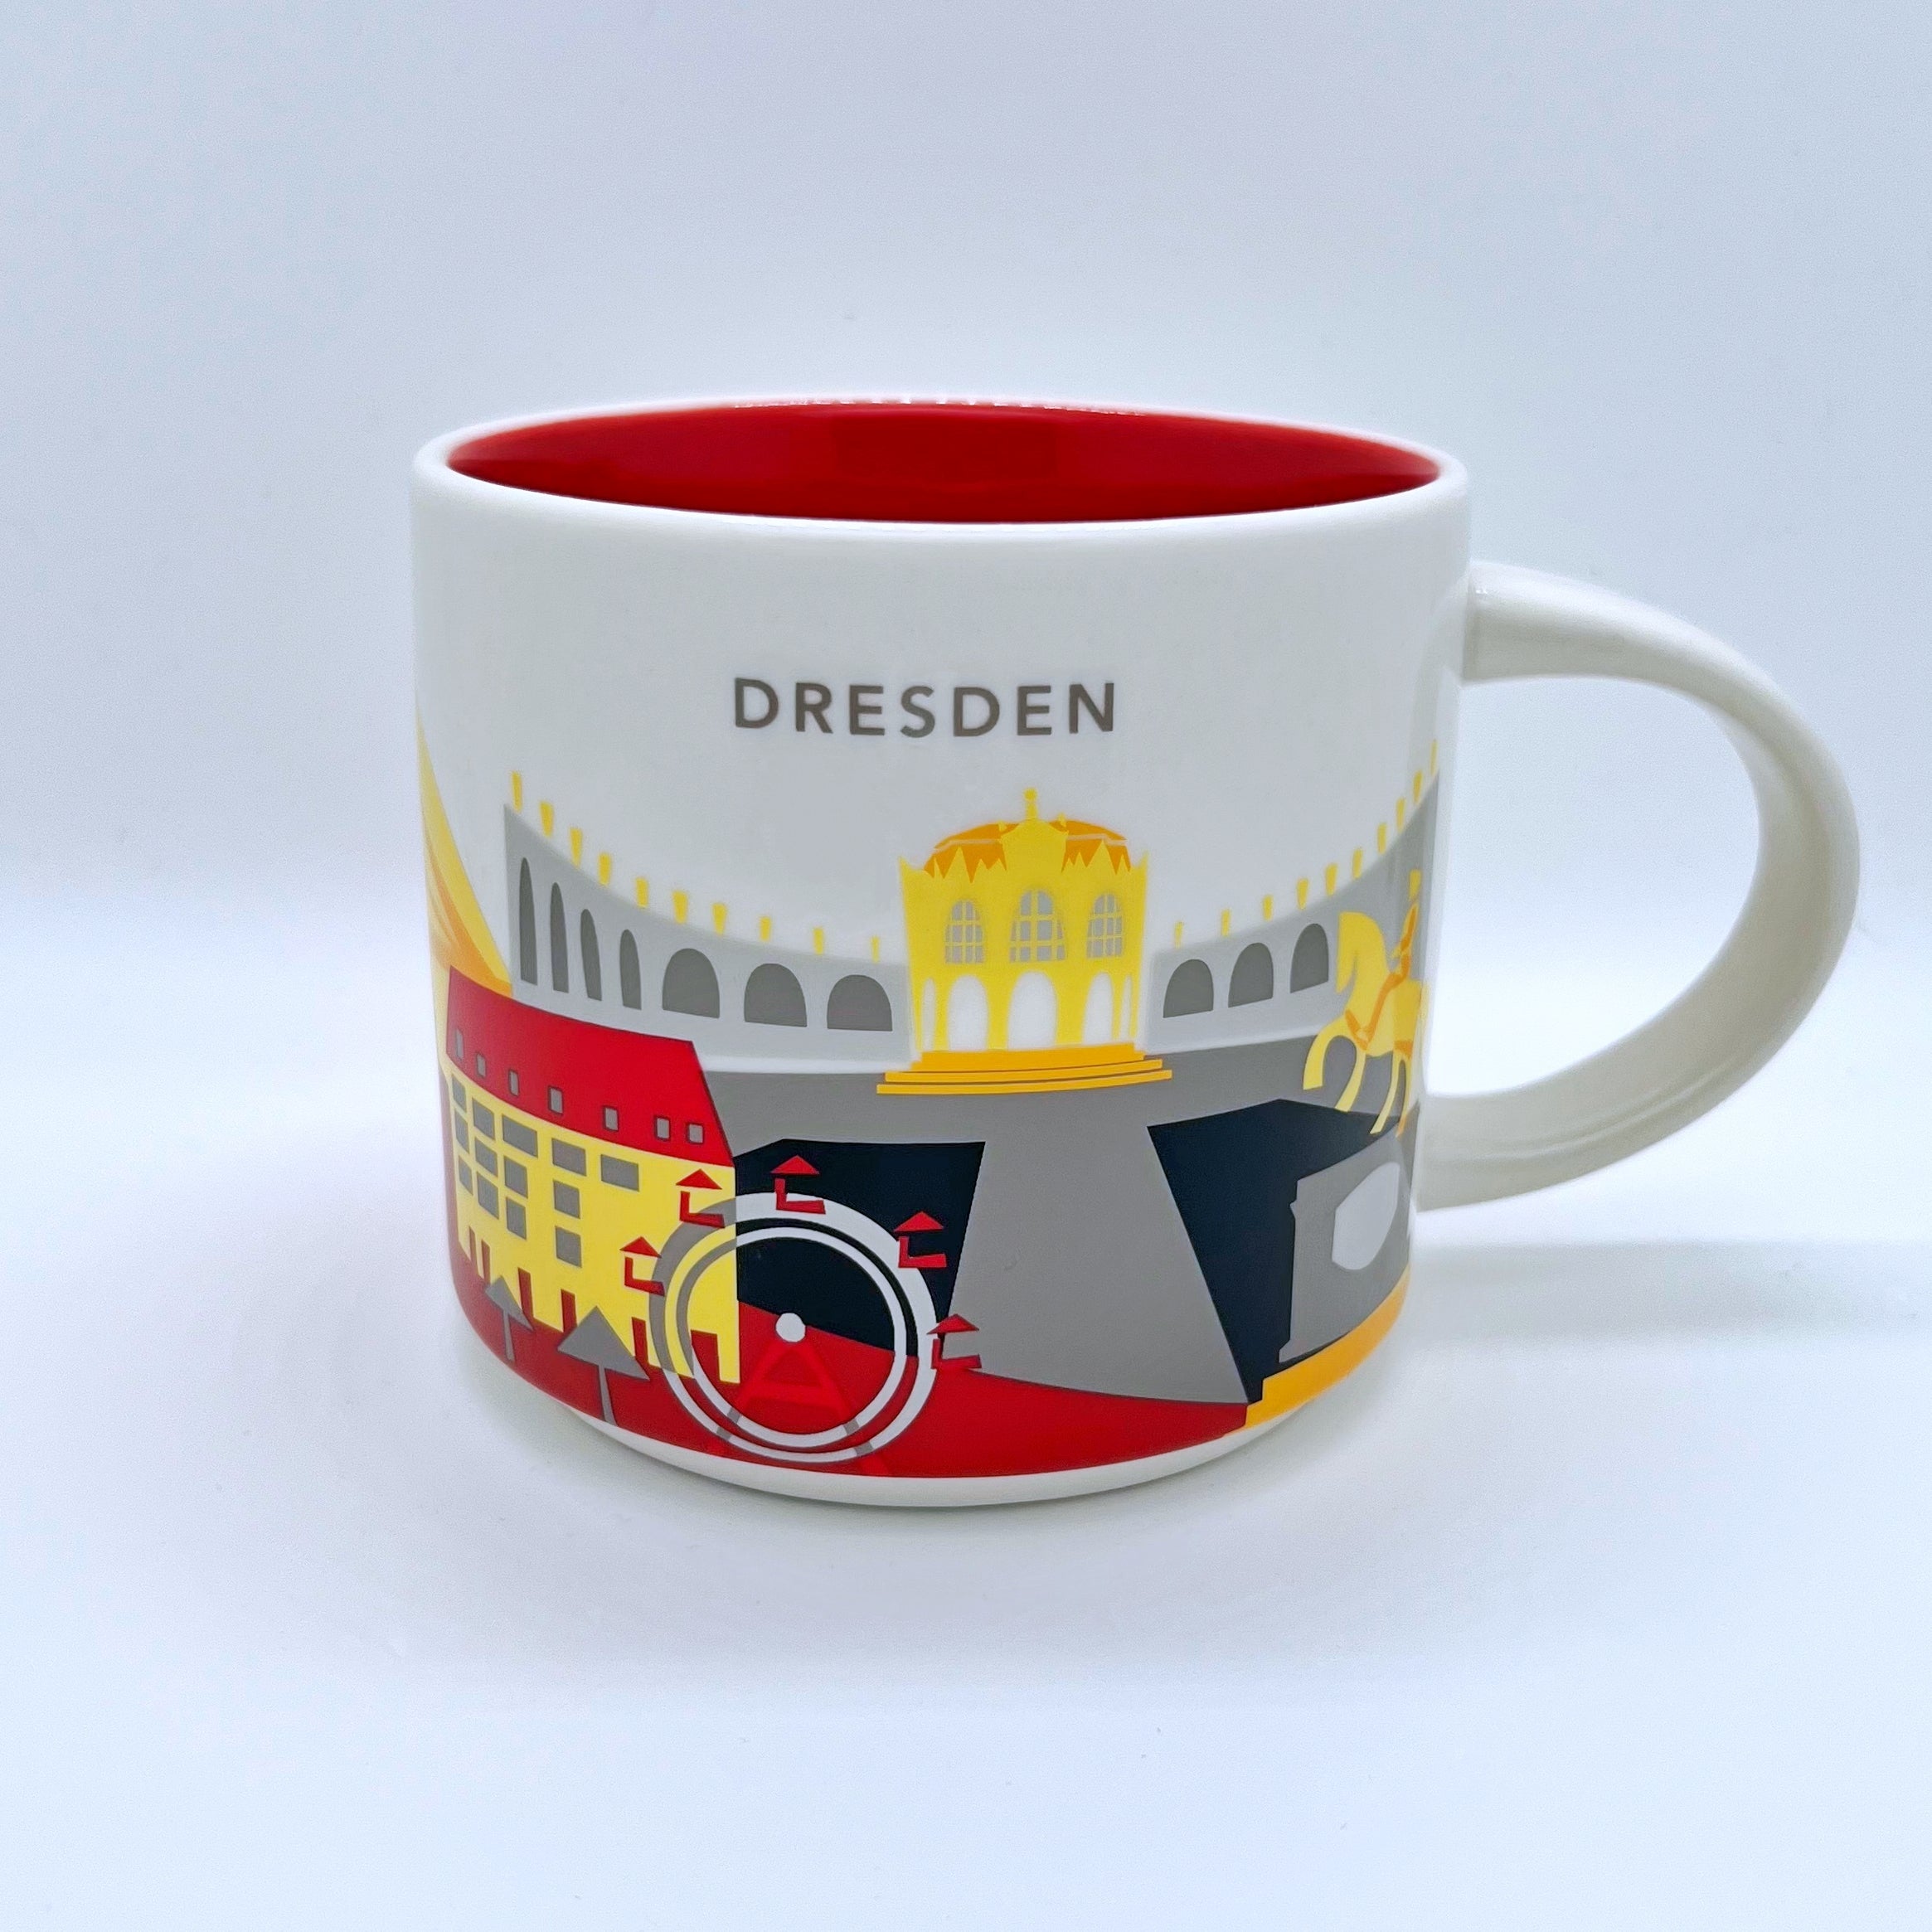 Kaffee Tee und Cappuccino Tasse von Starbucks mit gemalten Bildern aus der Stadt Dresden